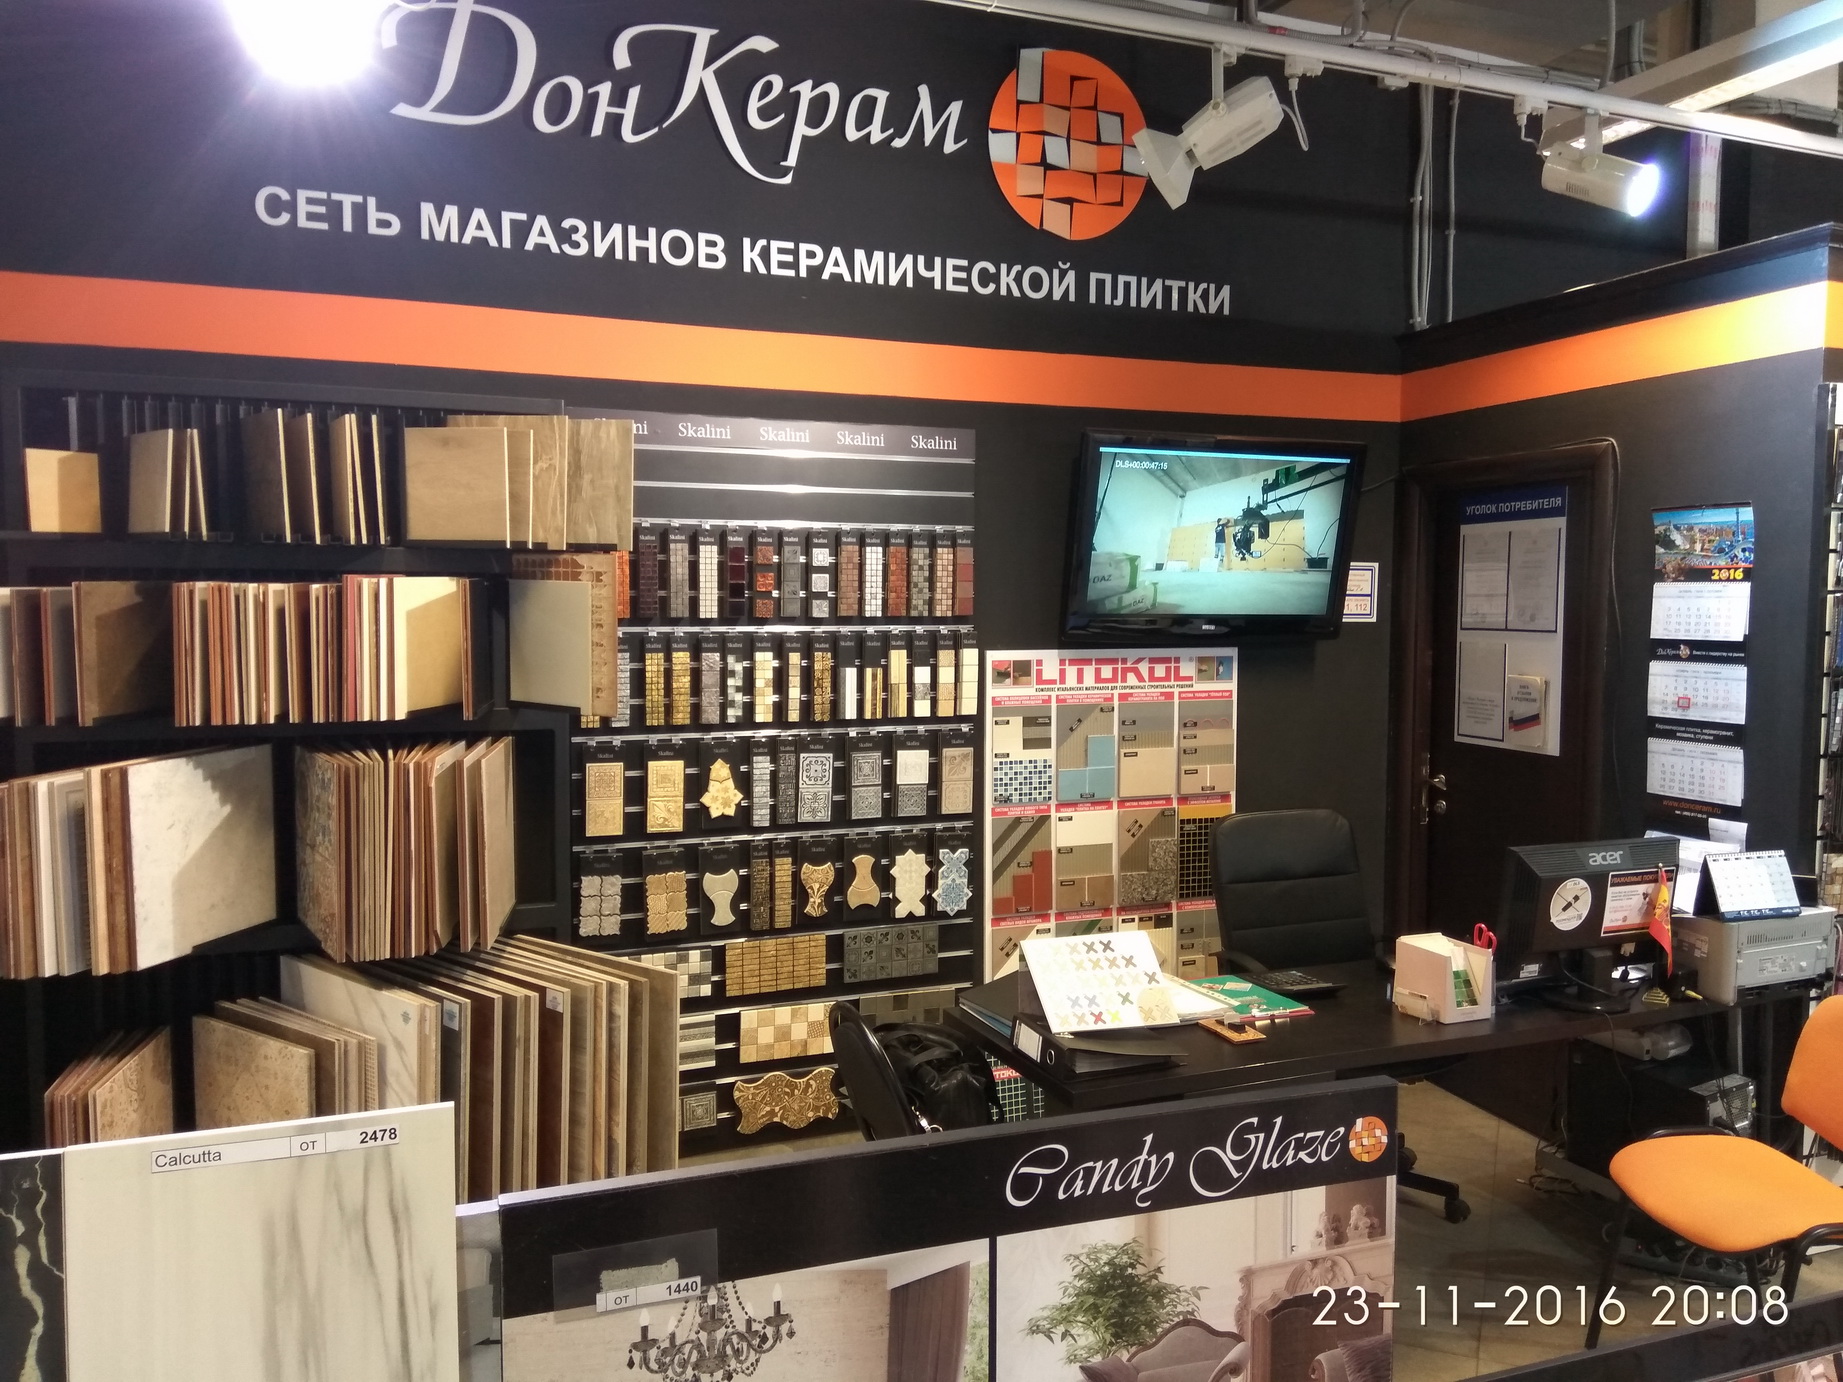 Магазин керамической плитки рядом с м. Домодедовская